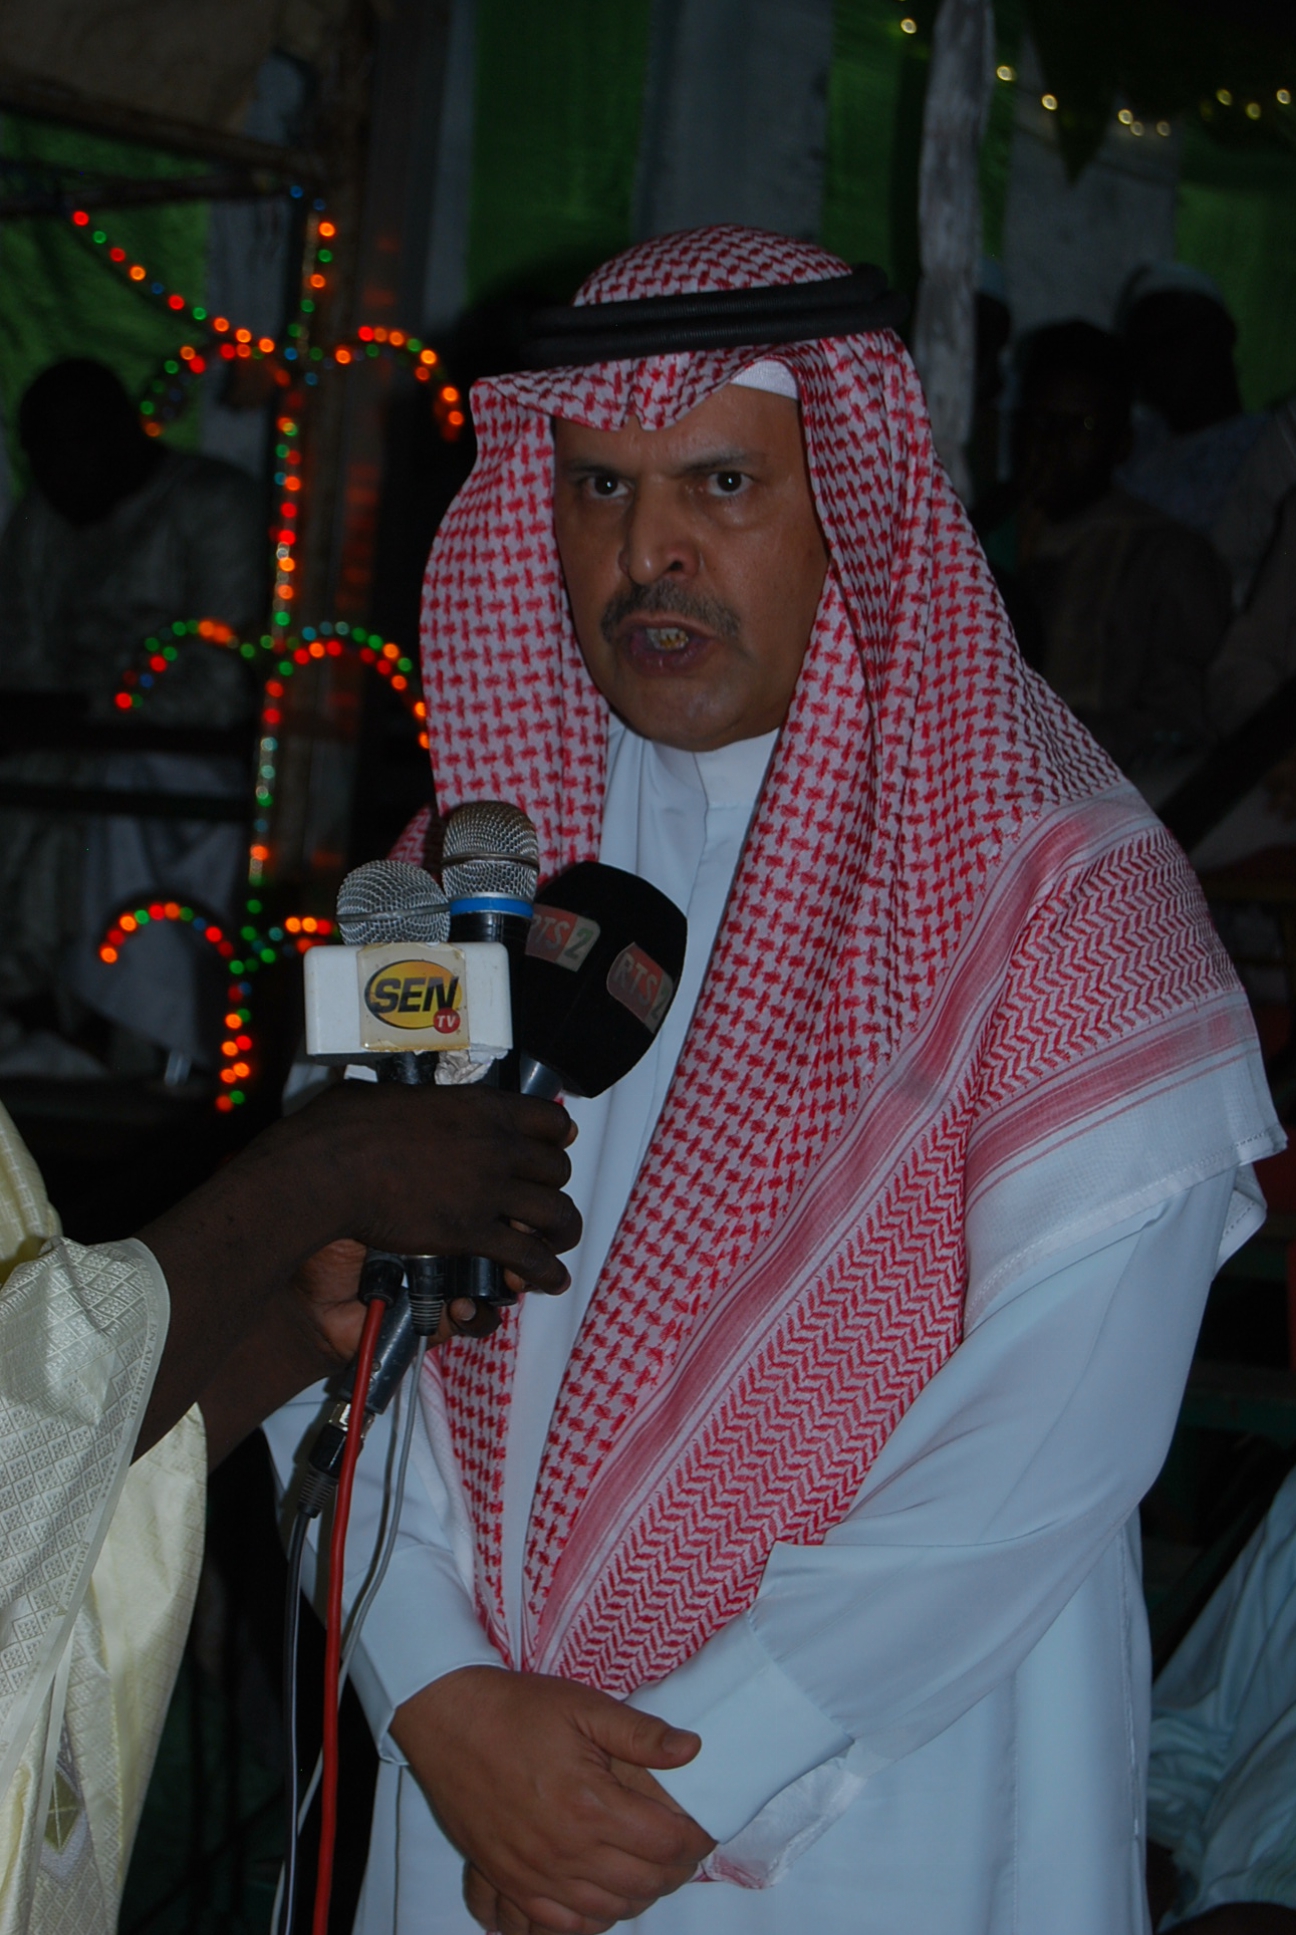 L'Ambassadeur d'Arabie Saoudite au Gamou de M'bour : "Nous serons toujours aux côtés du Sénégal pour un islam de paix et de tolérance"